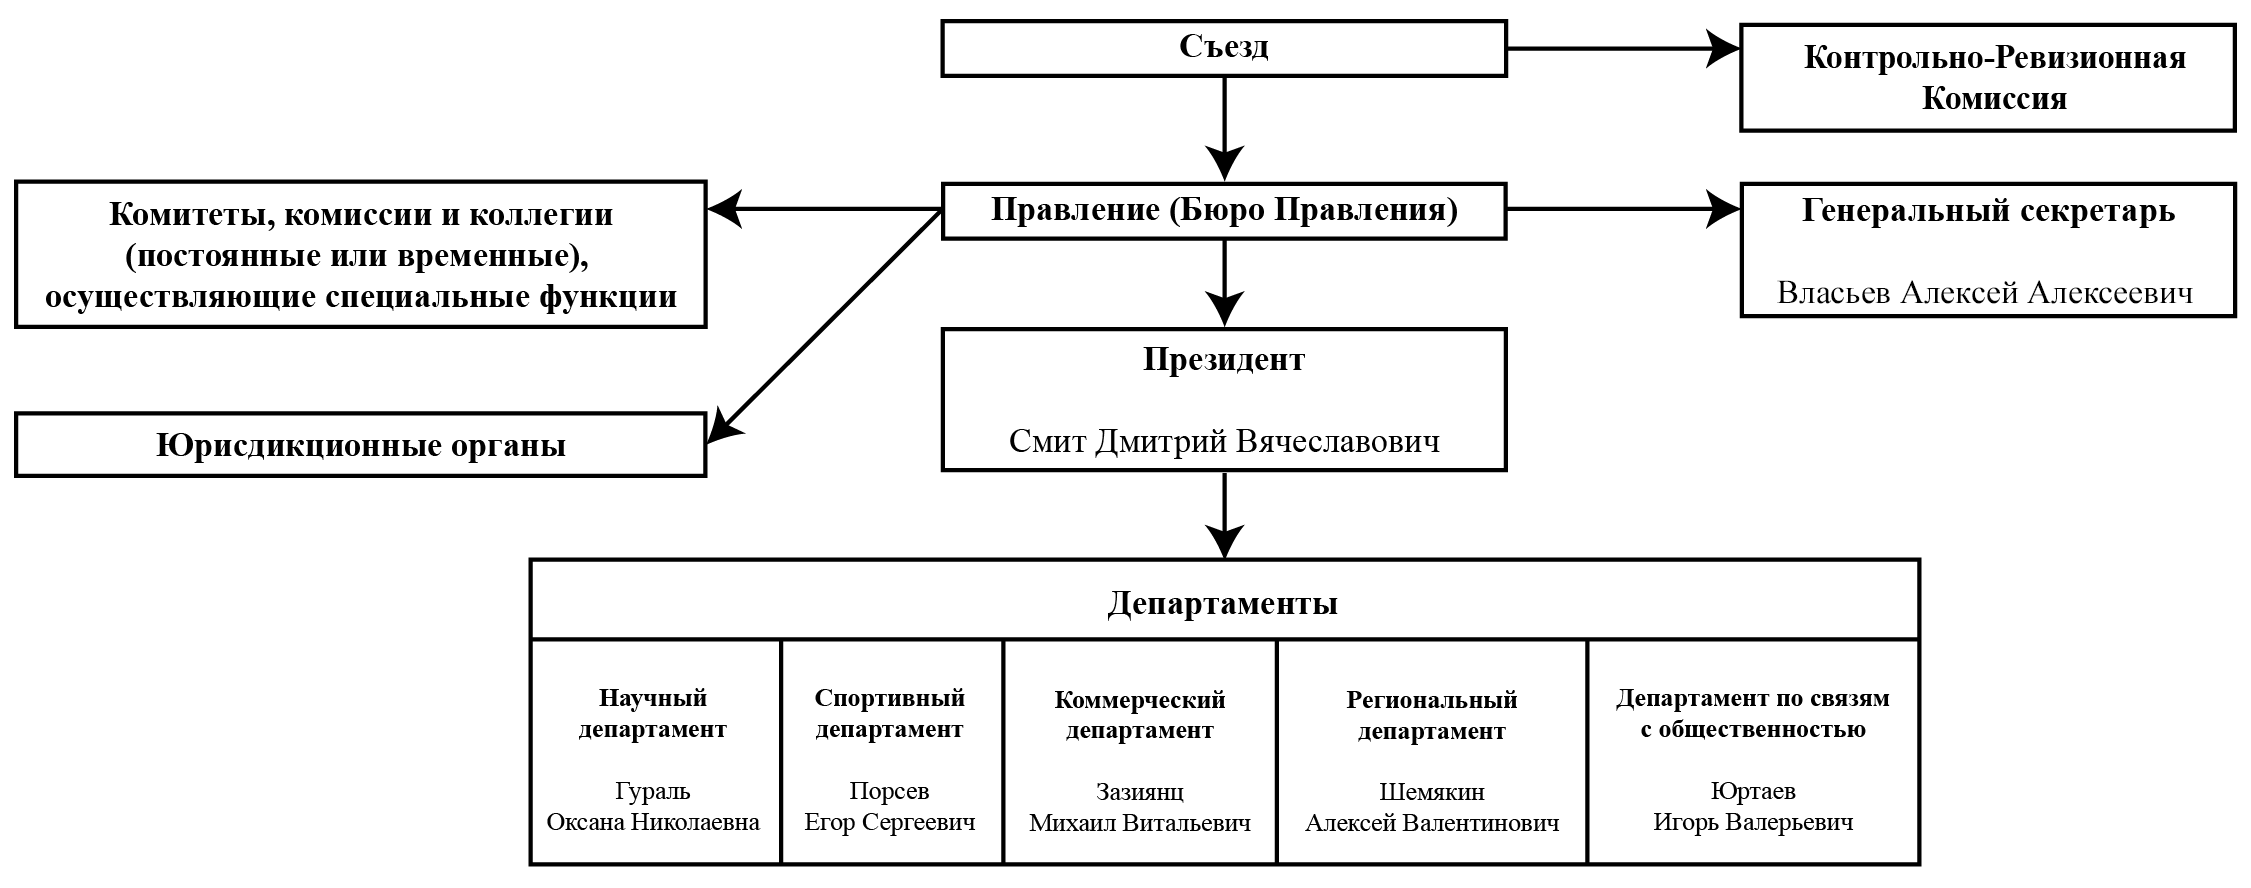 Руководство и структура | ФКС России